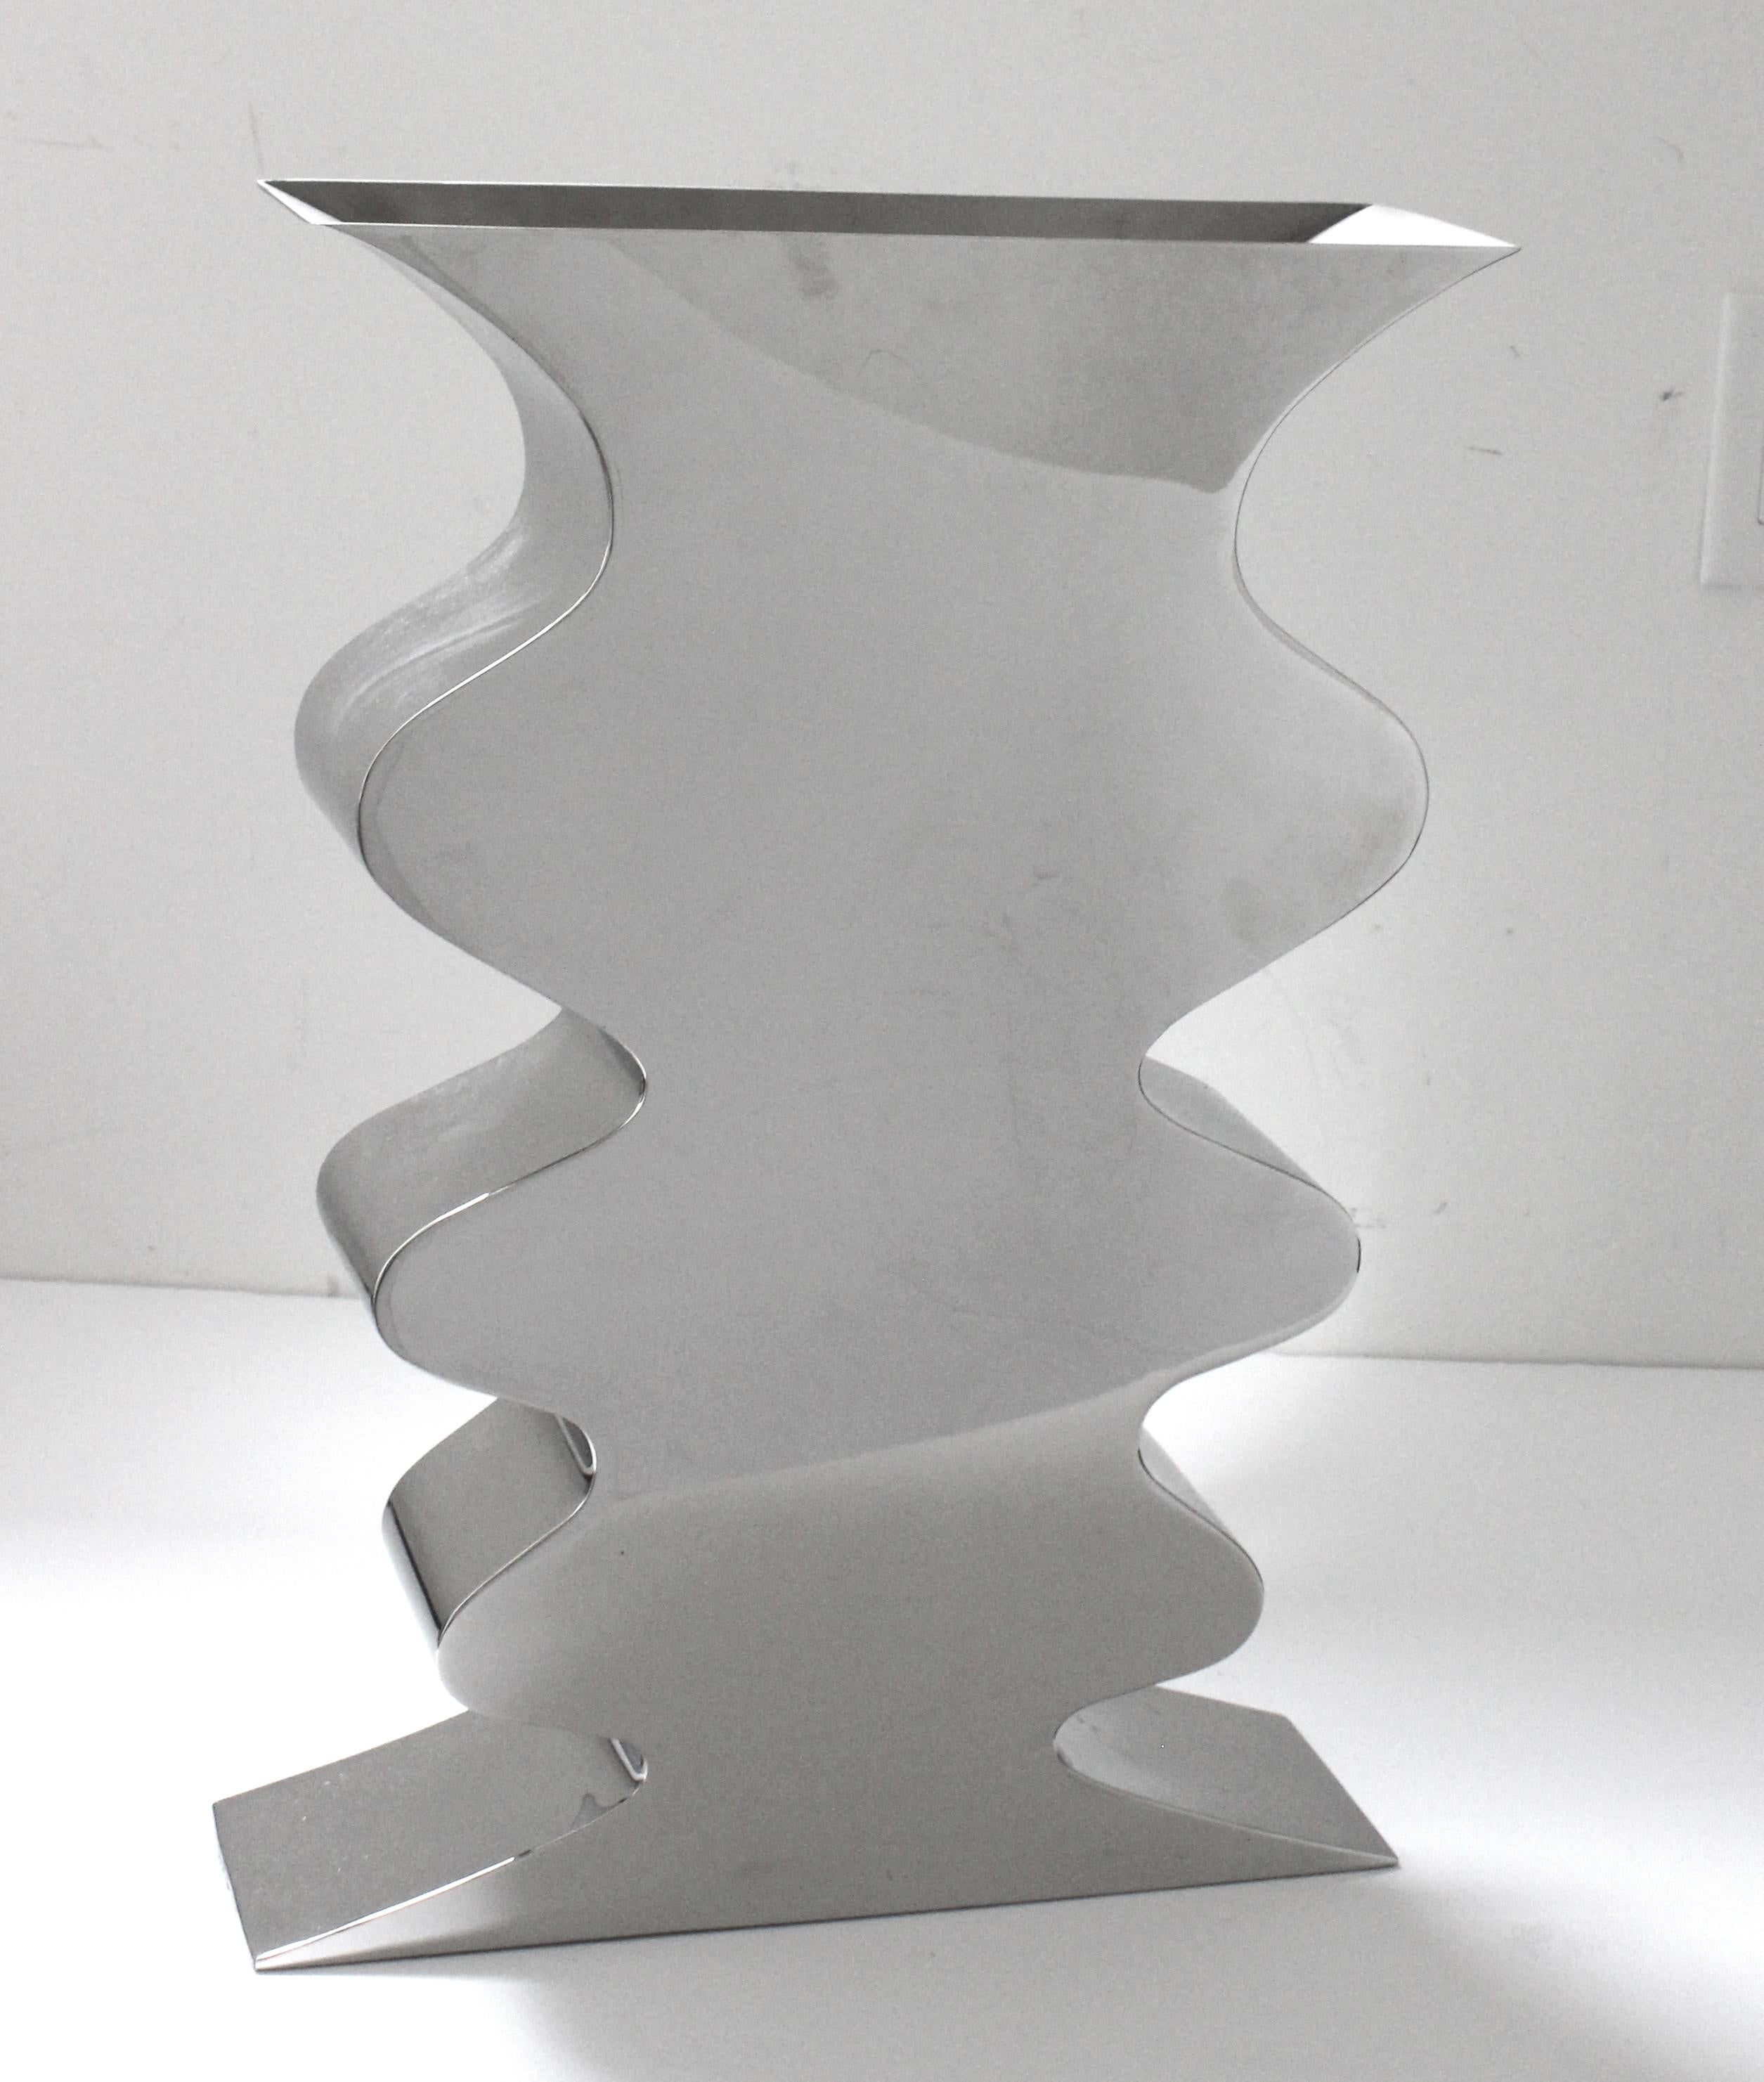 Diese dramatische Vase aus poliertem Stahl wurde in den 1980er Jahren von Stanley J. Freedman entworfen und trägt den Titel 